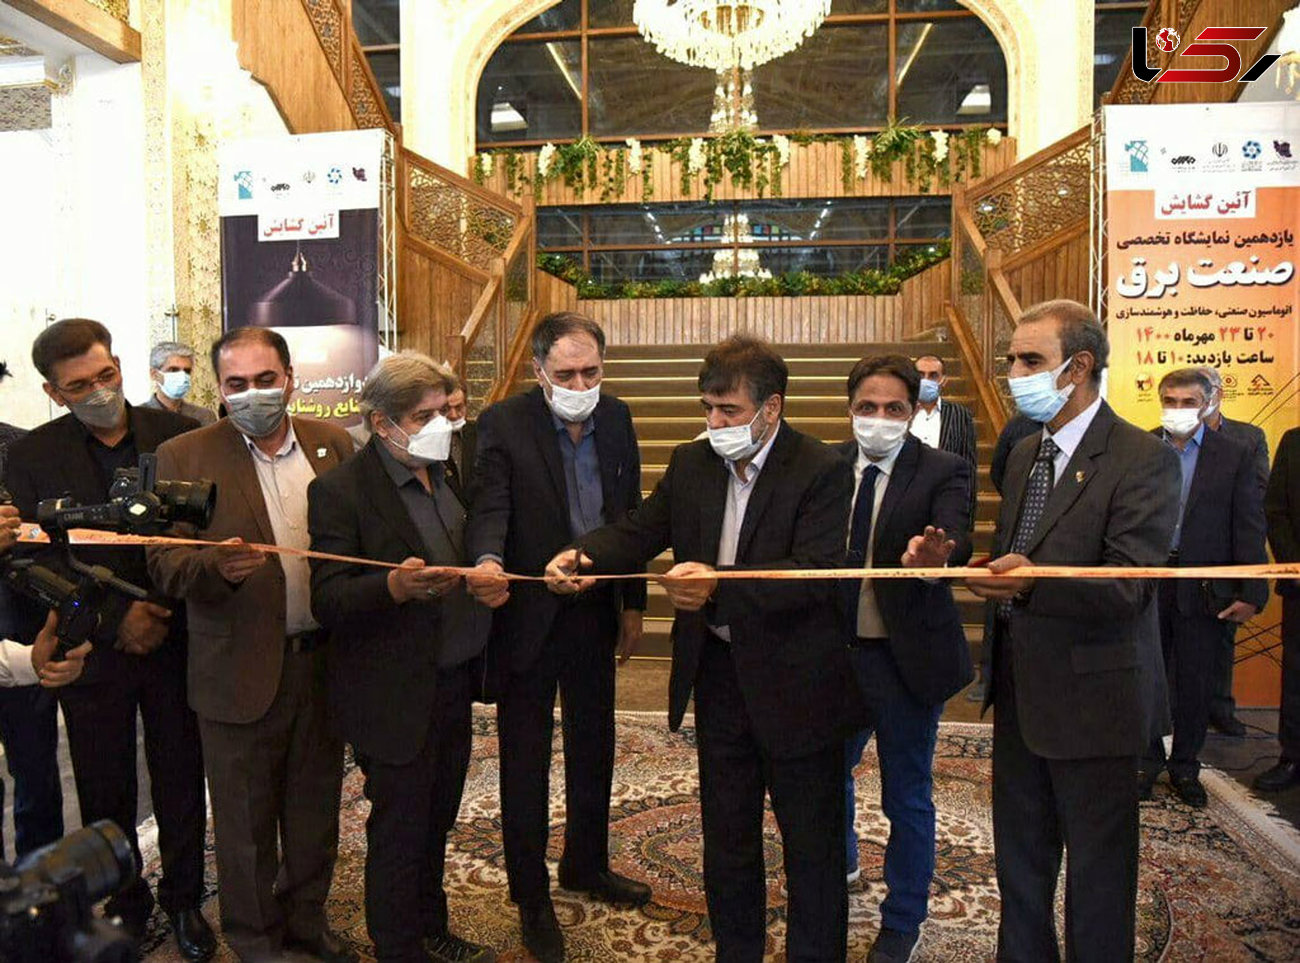 آغاز نمایشگاه برق، اتوماسیون صنعتی و روشنایی اصفهان با حضور 86 شرکت